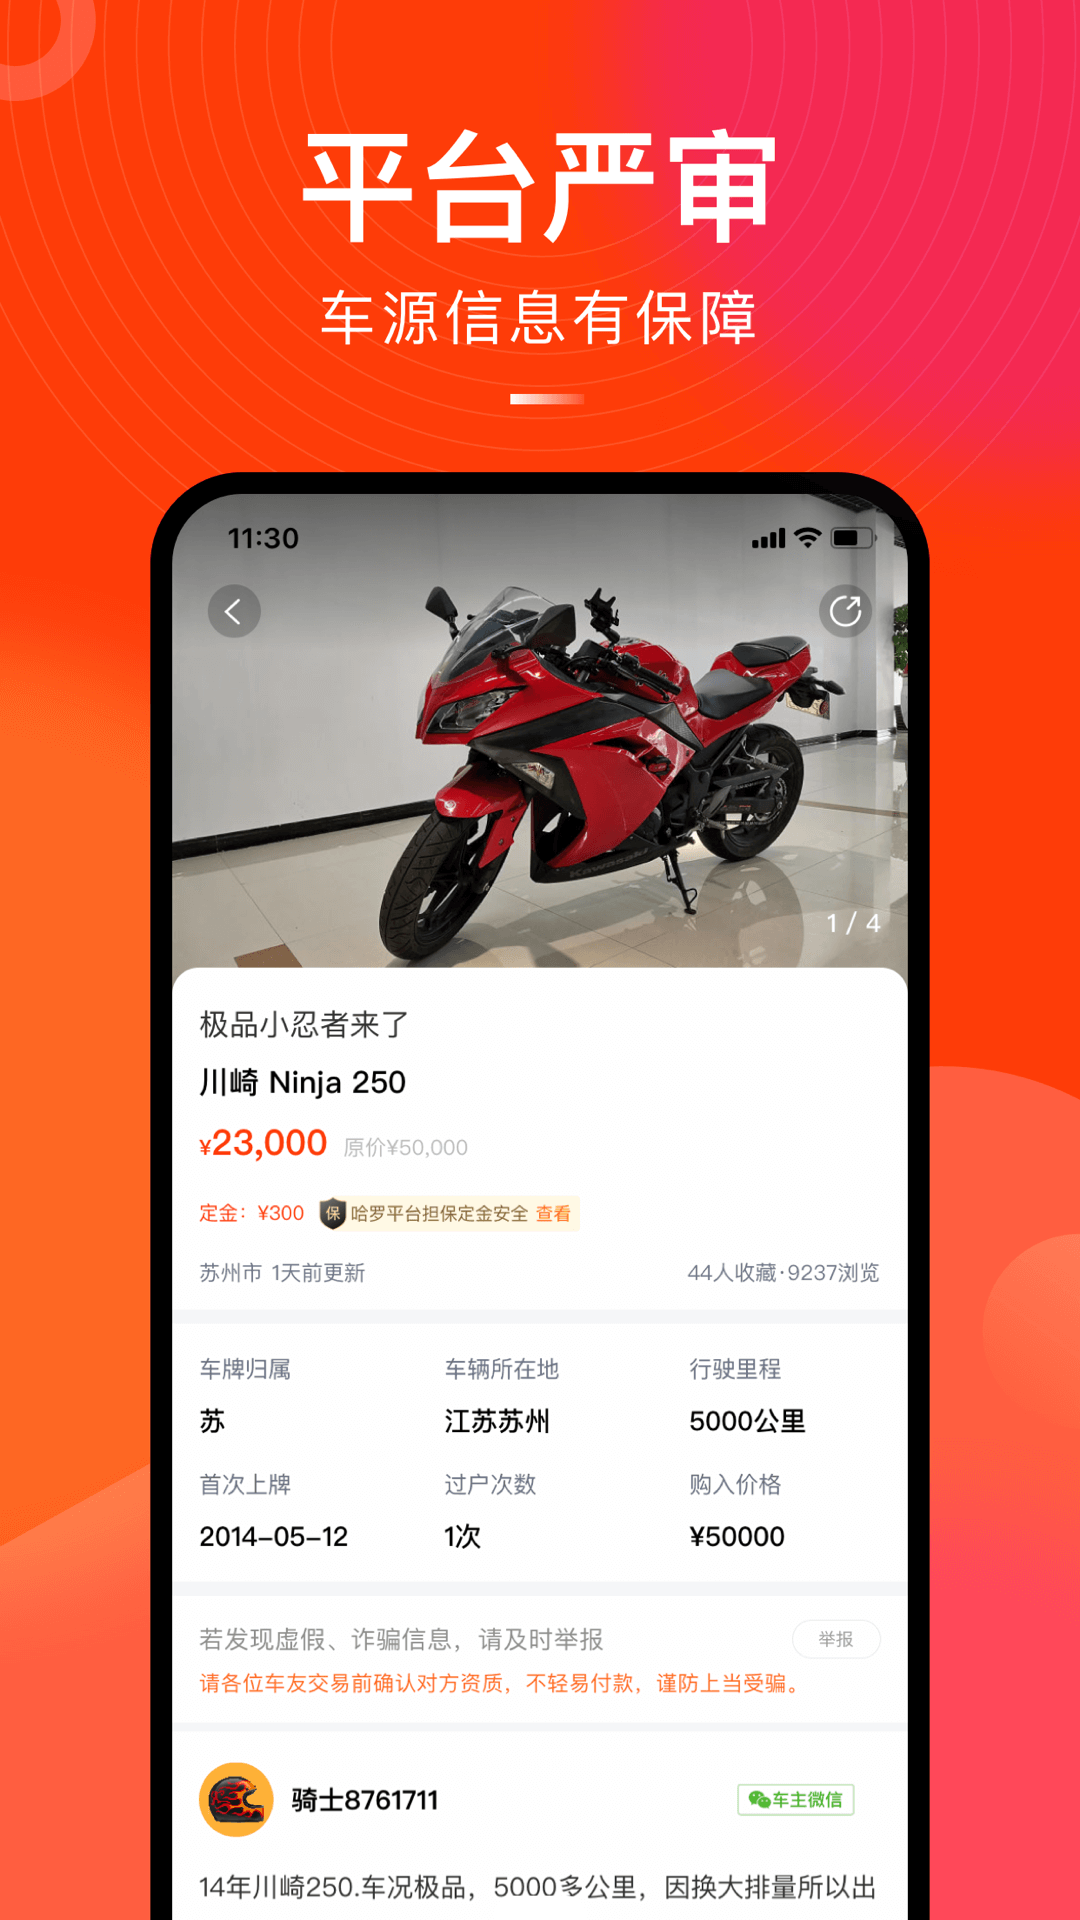 哈罗二手摩托车app下载 哈罗二手摩托车手机版官方最新版免费安装